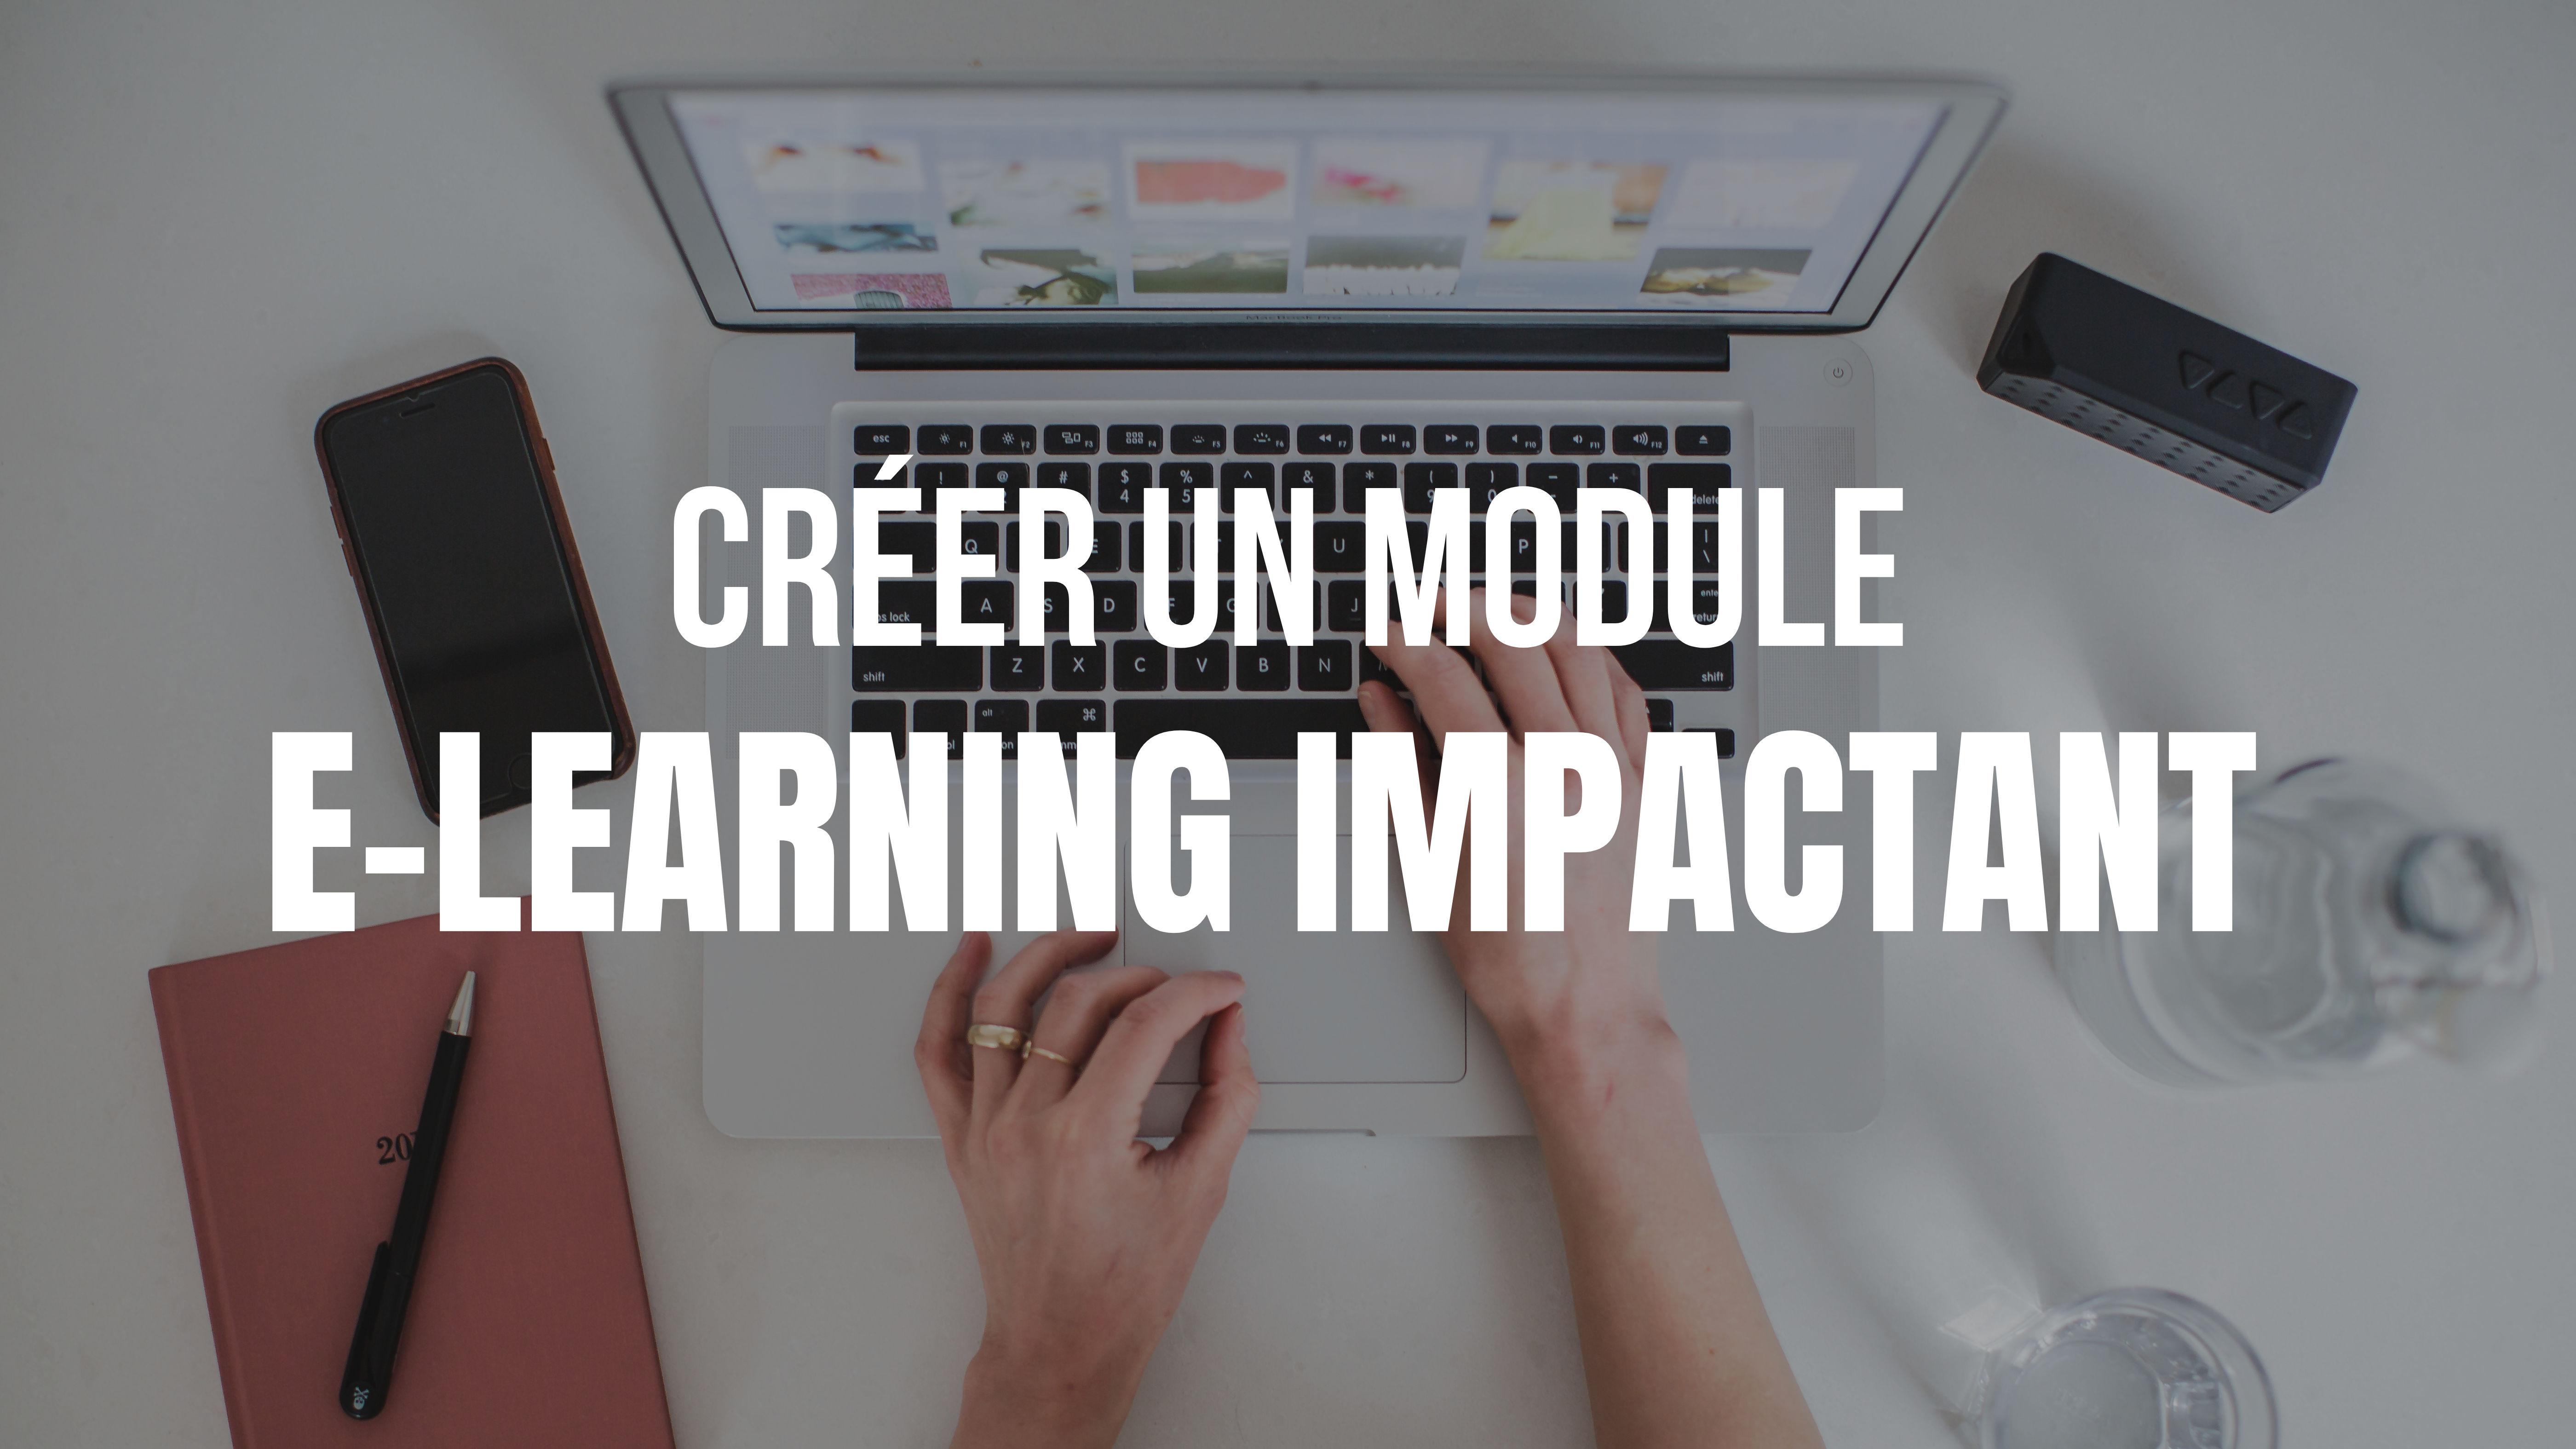 5 étapes pour créer rapidement un module e-learning impactant